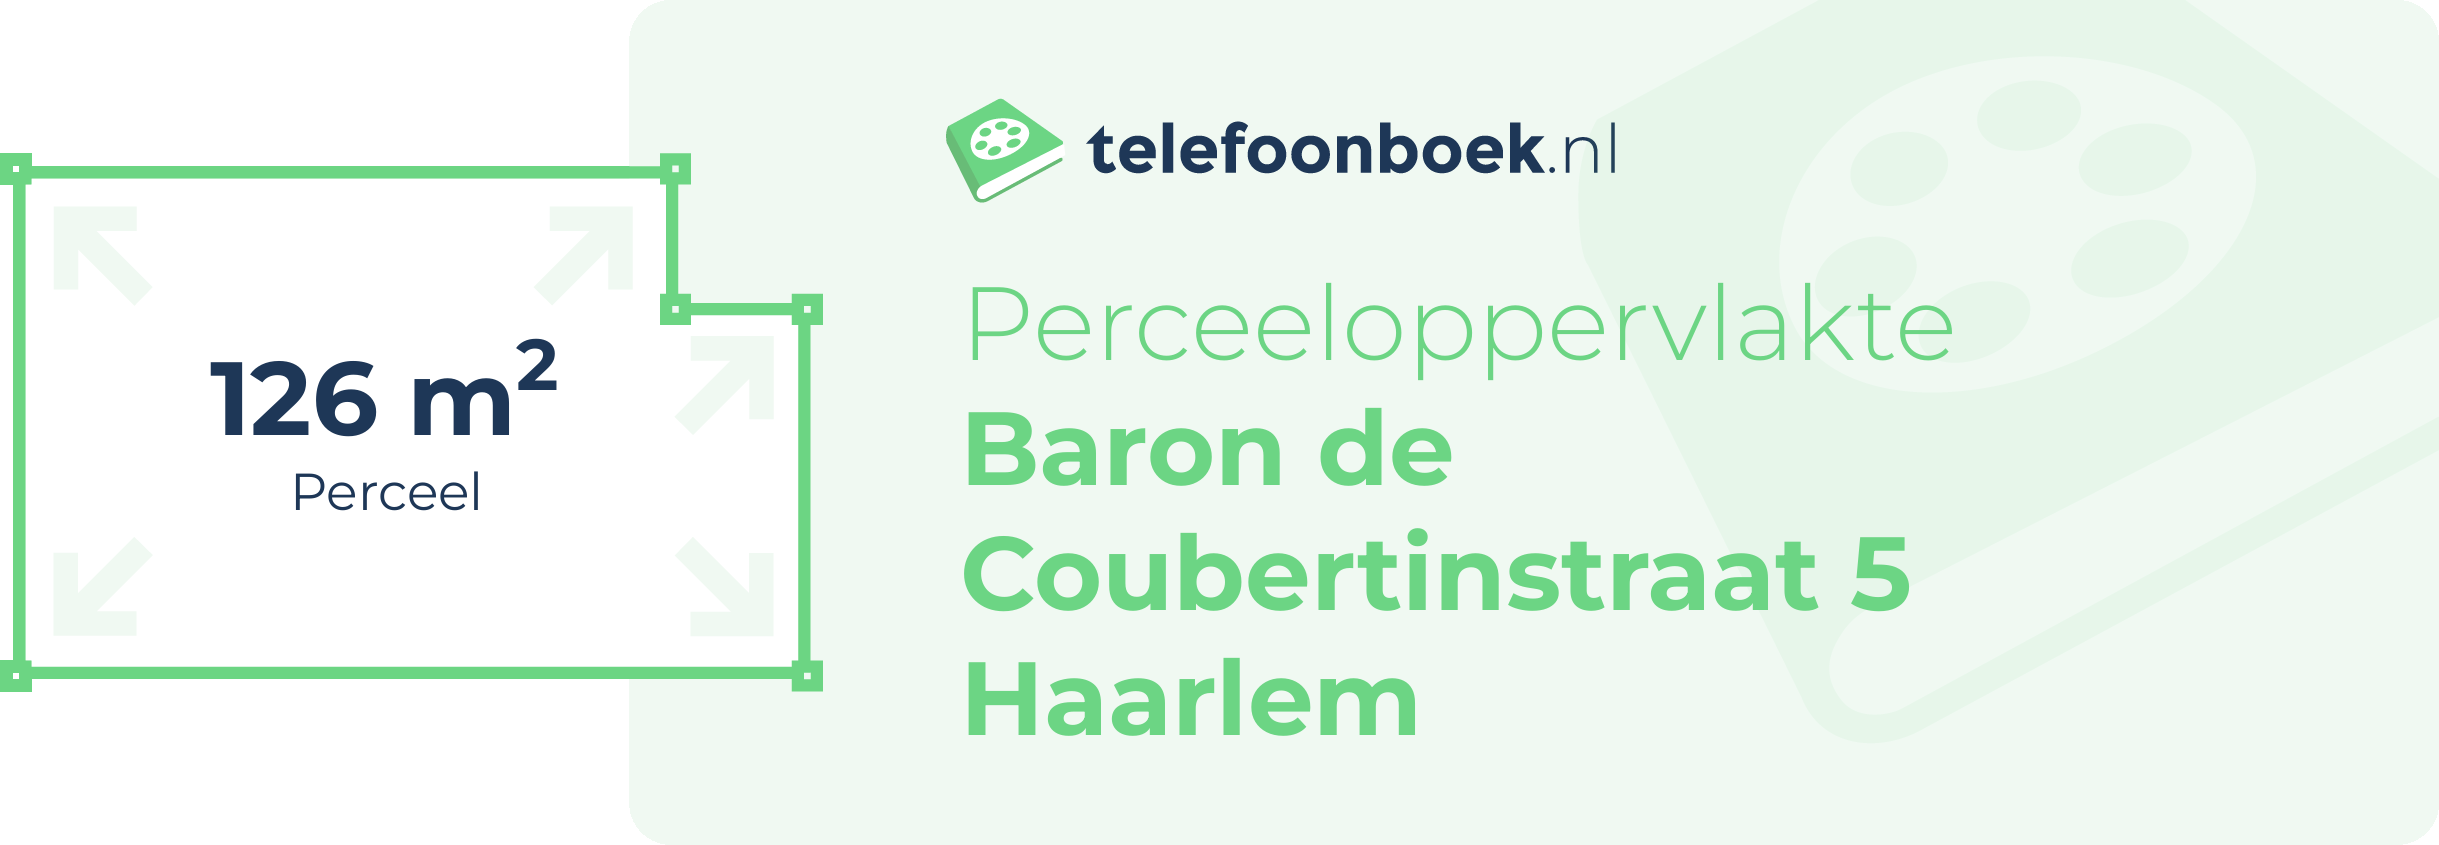 Perceeloppervlakte Baron De Coubertinstraat 5 Haarlem